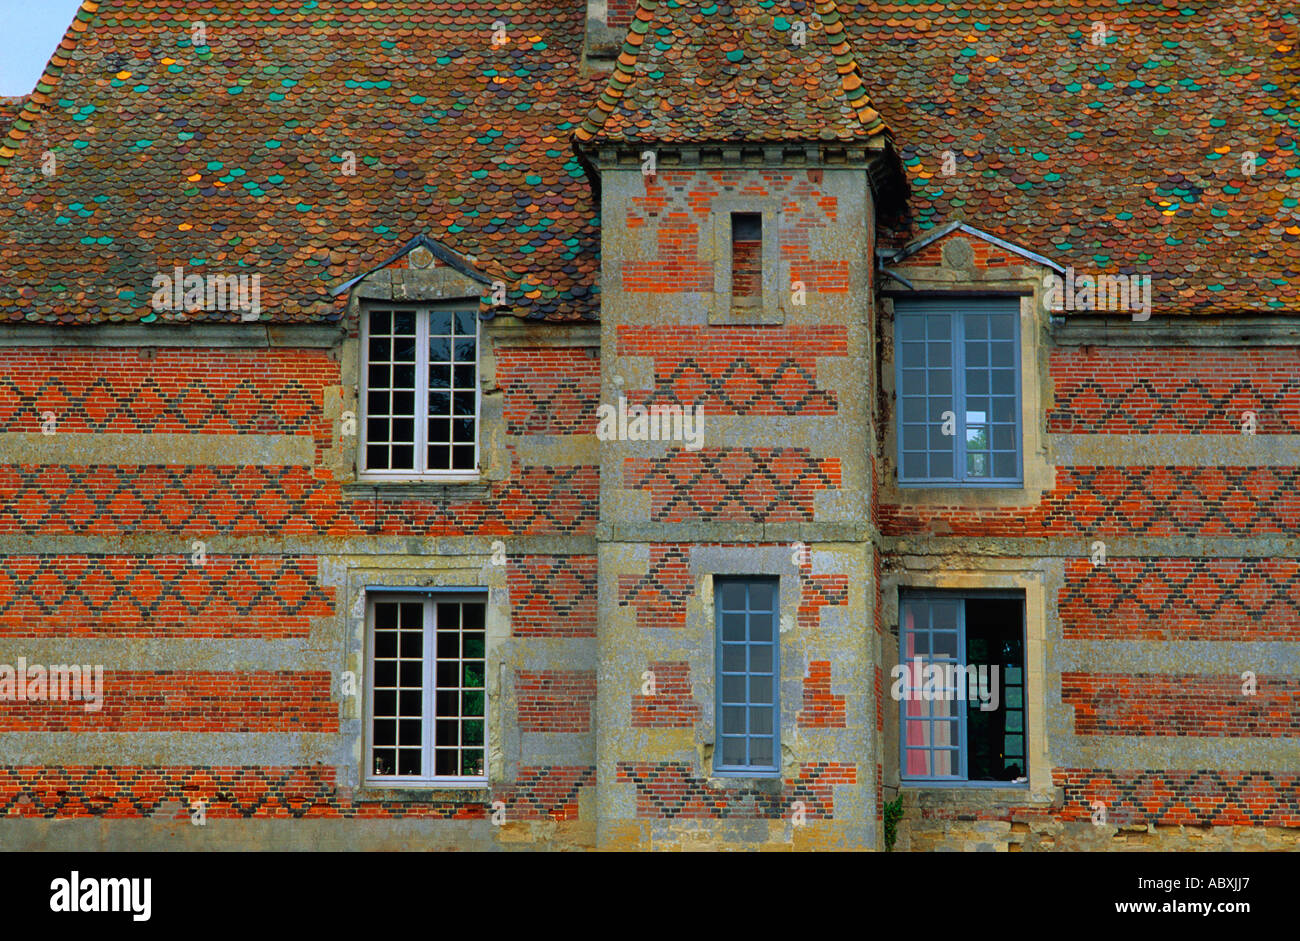 Frankreich Normandie Französisches Provinzhaus. Gemusterte Backstein- und Steinfassade eines Landhauses mit mehrfarbigem Schieferdach und Gitterfenstern Stockfoto